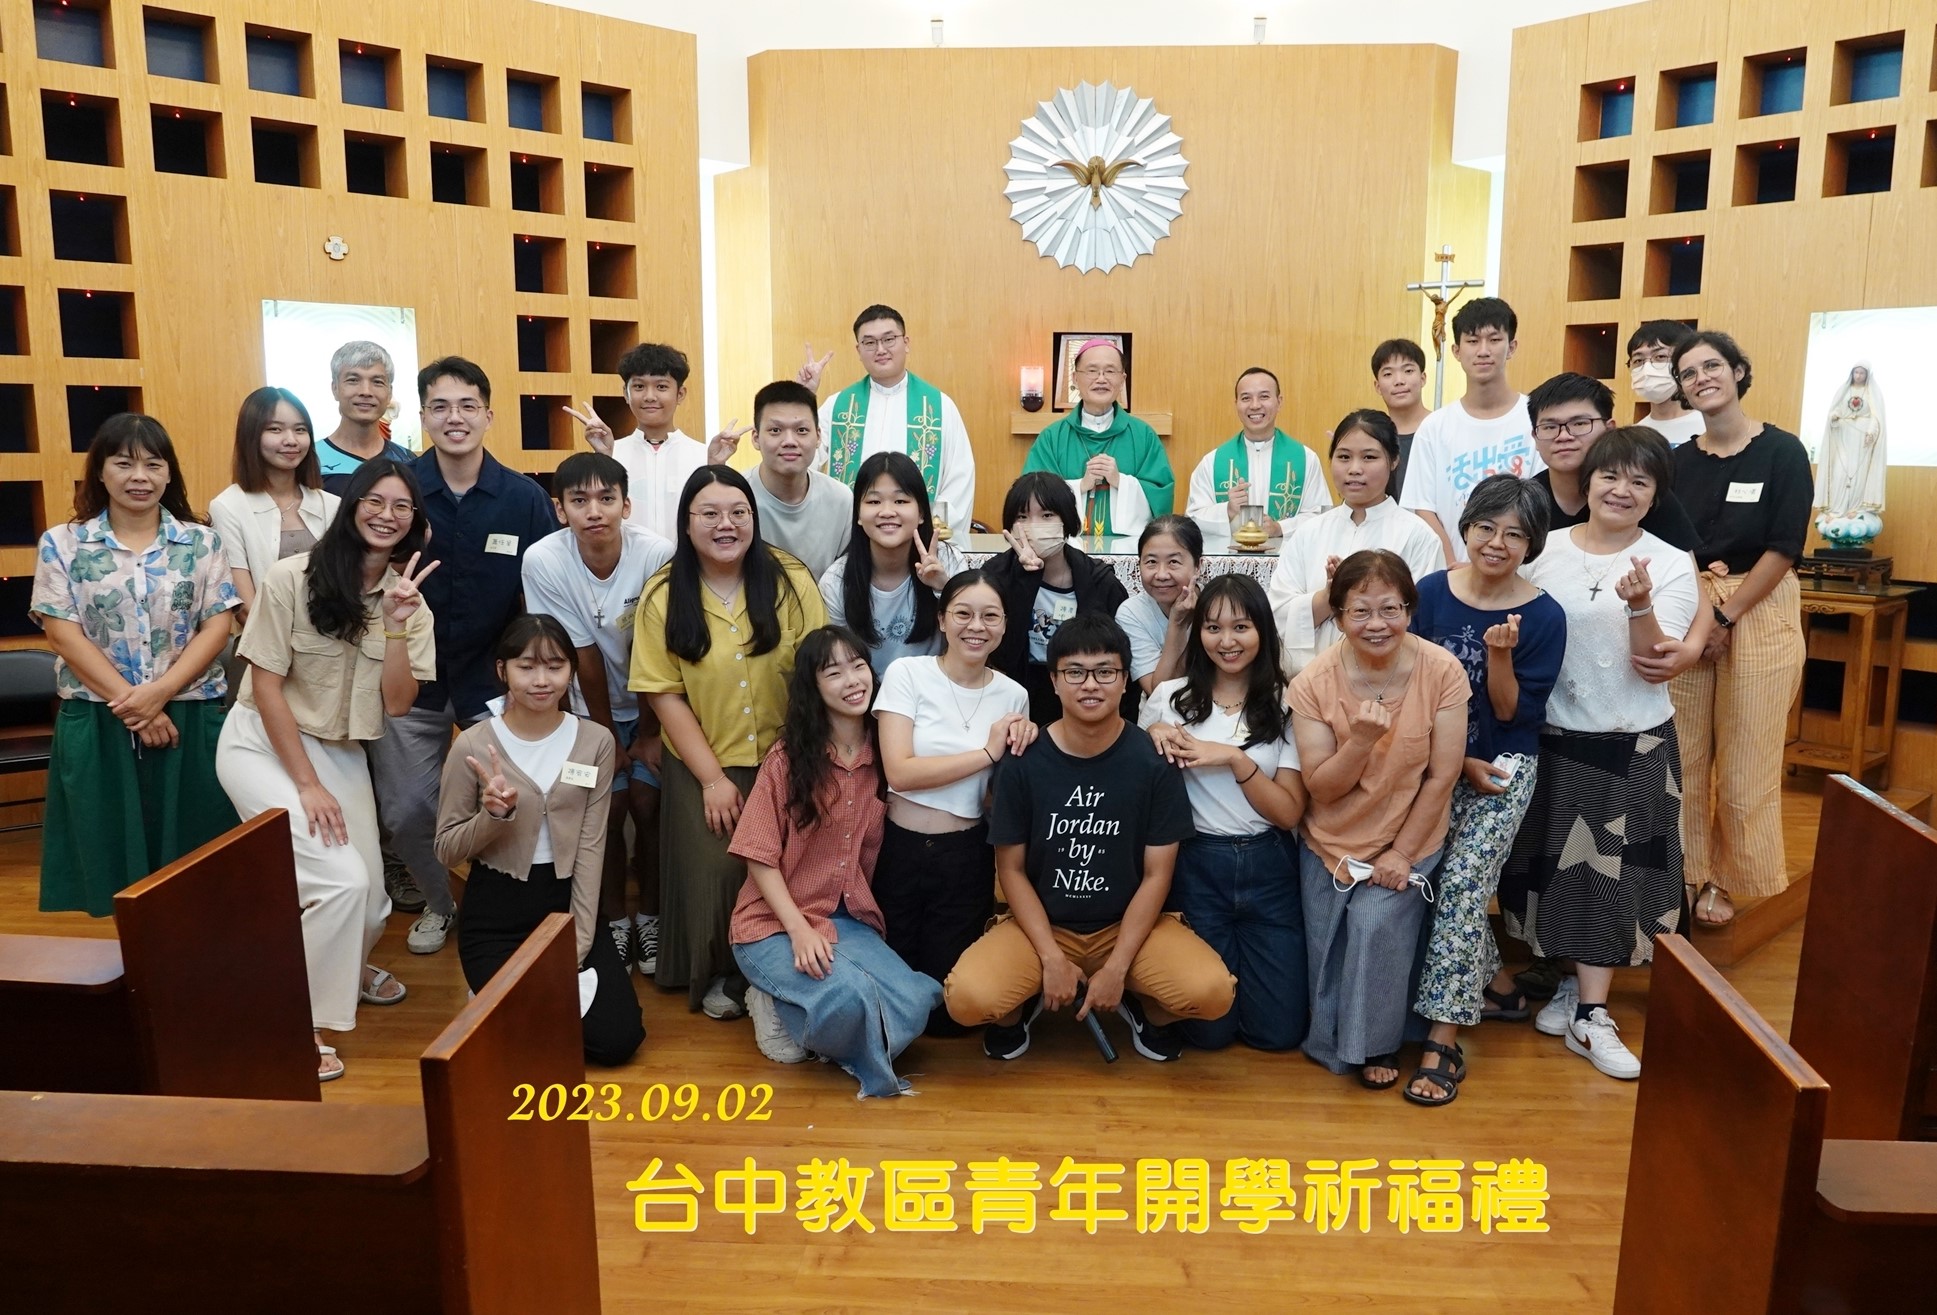 台中教區青年開學祝福禮